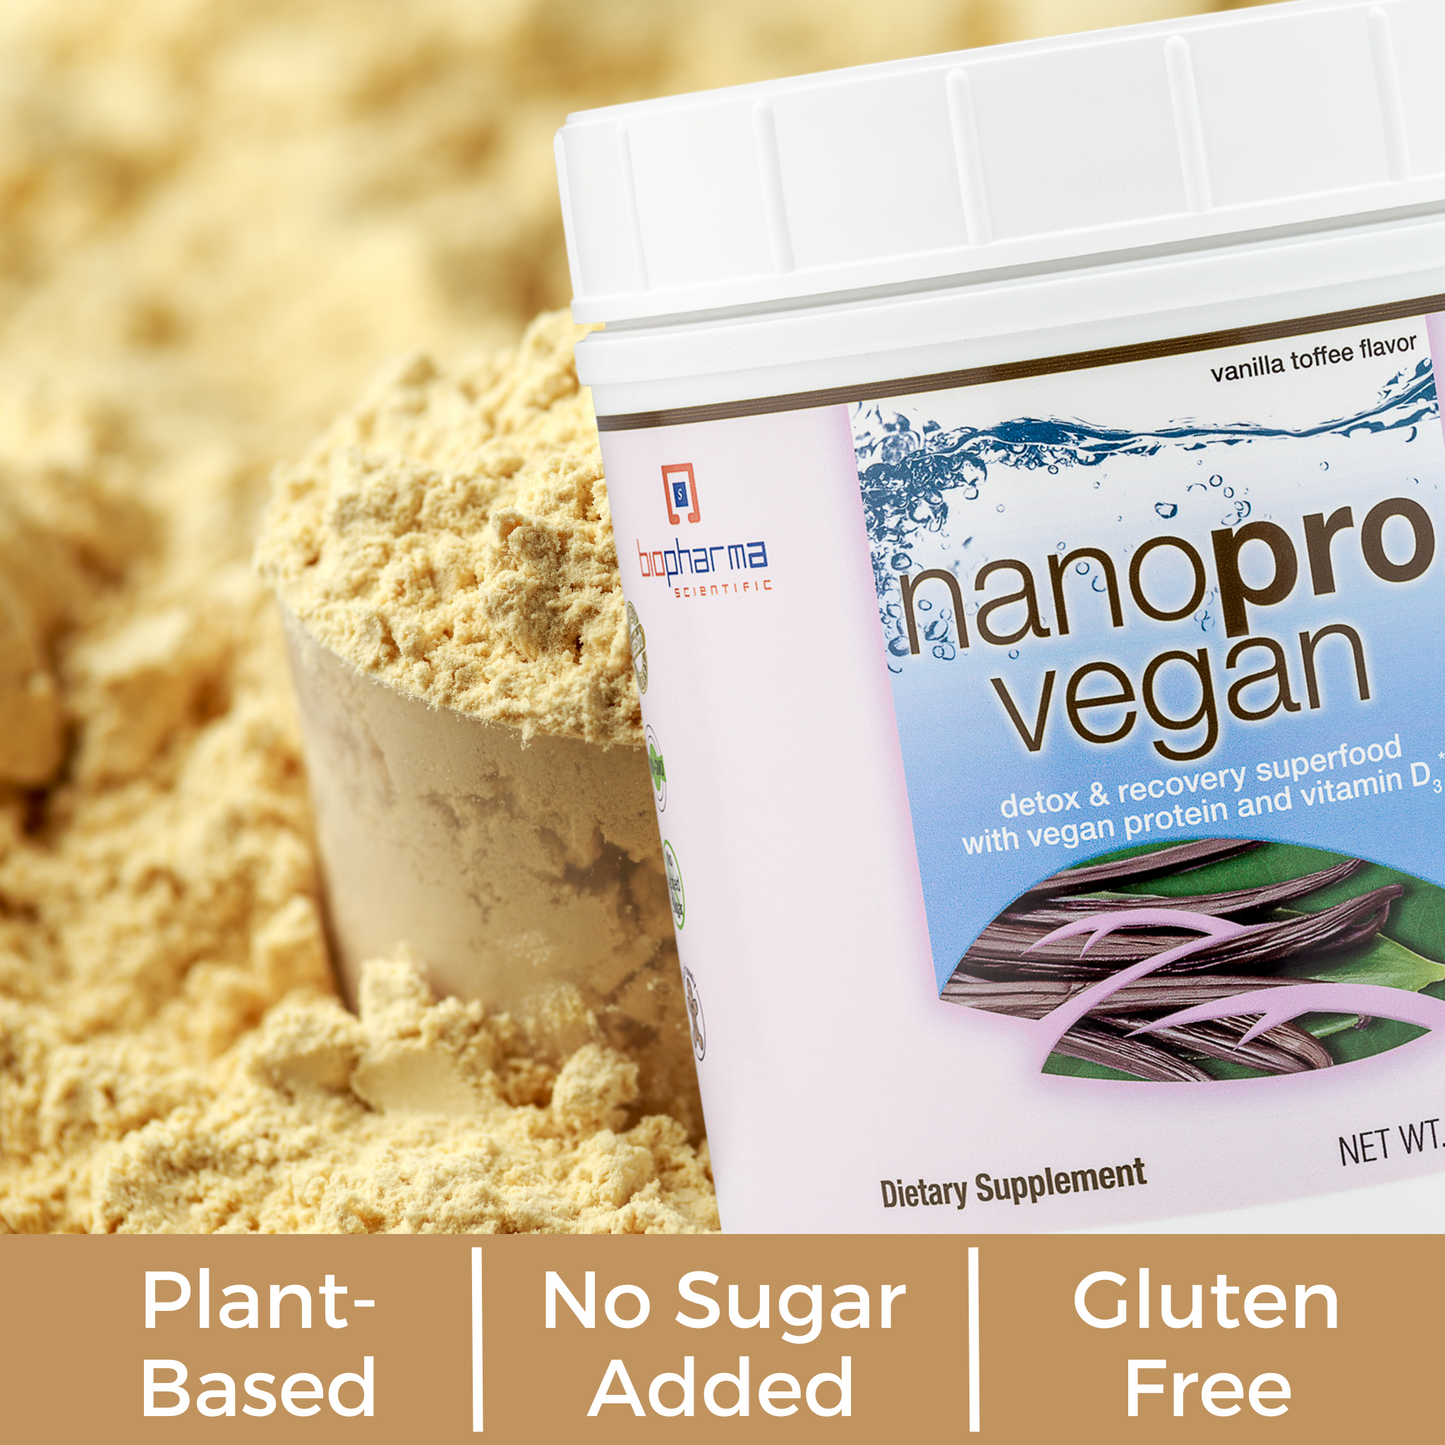 nanopro vegan benefits